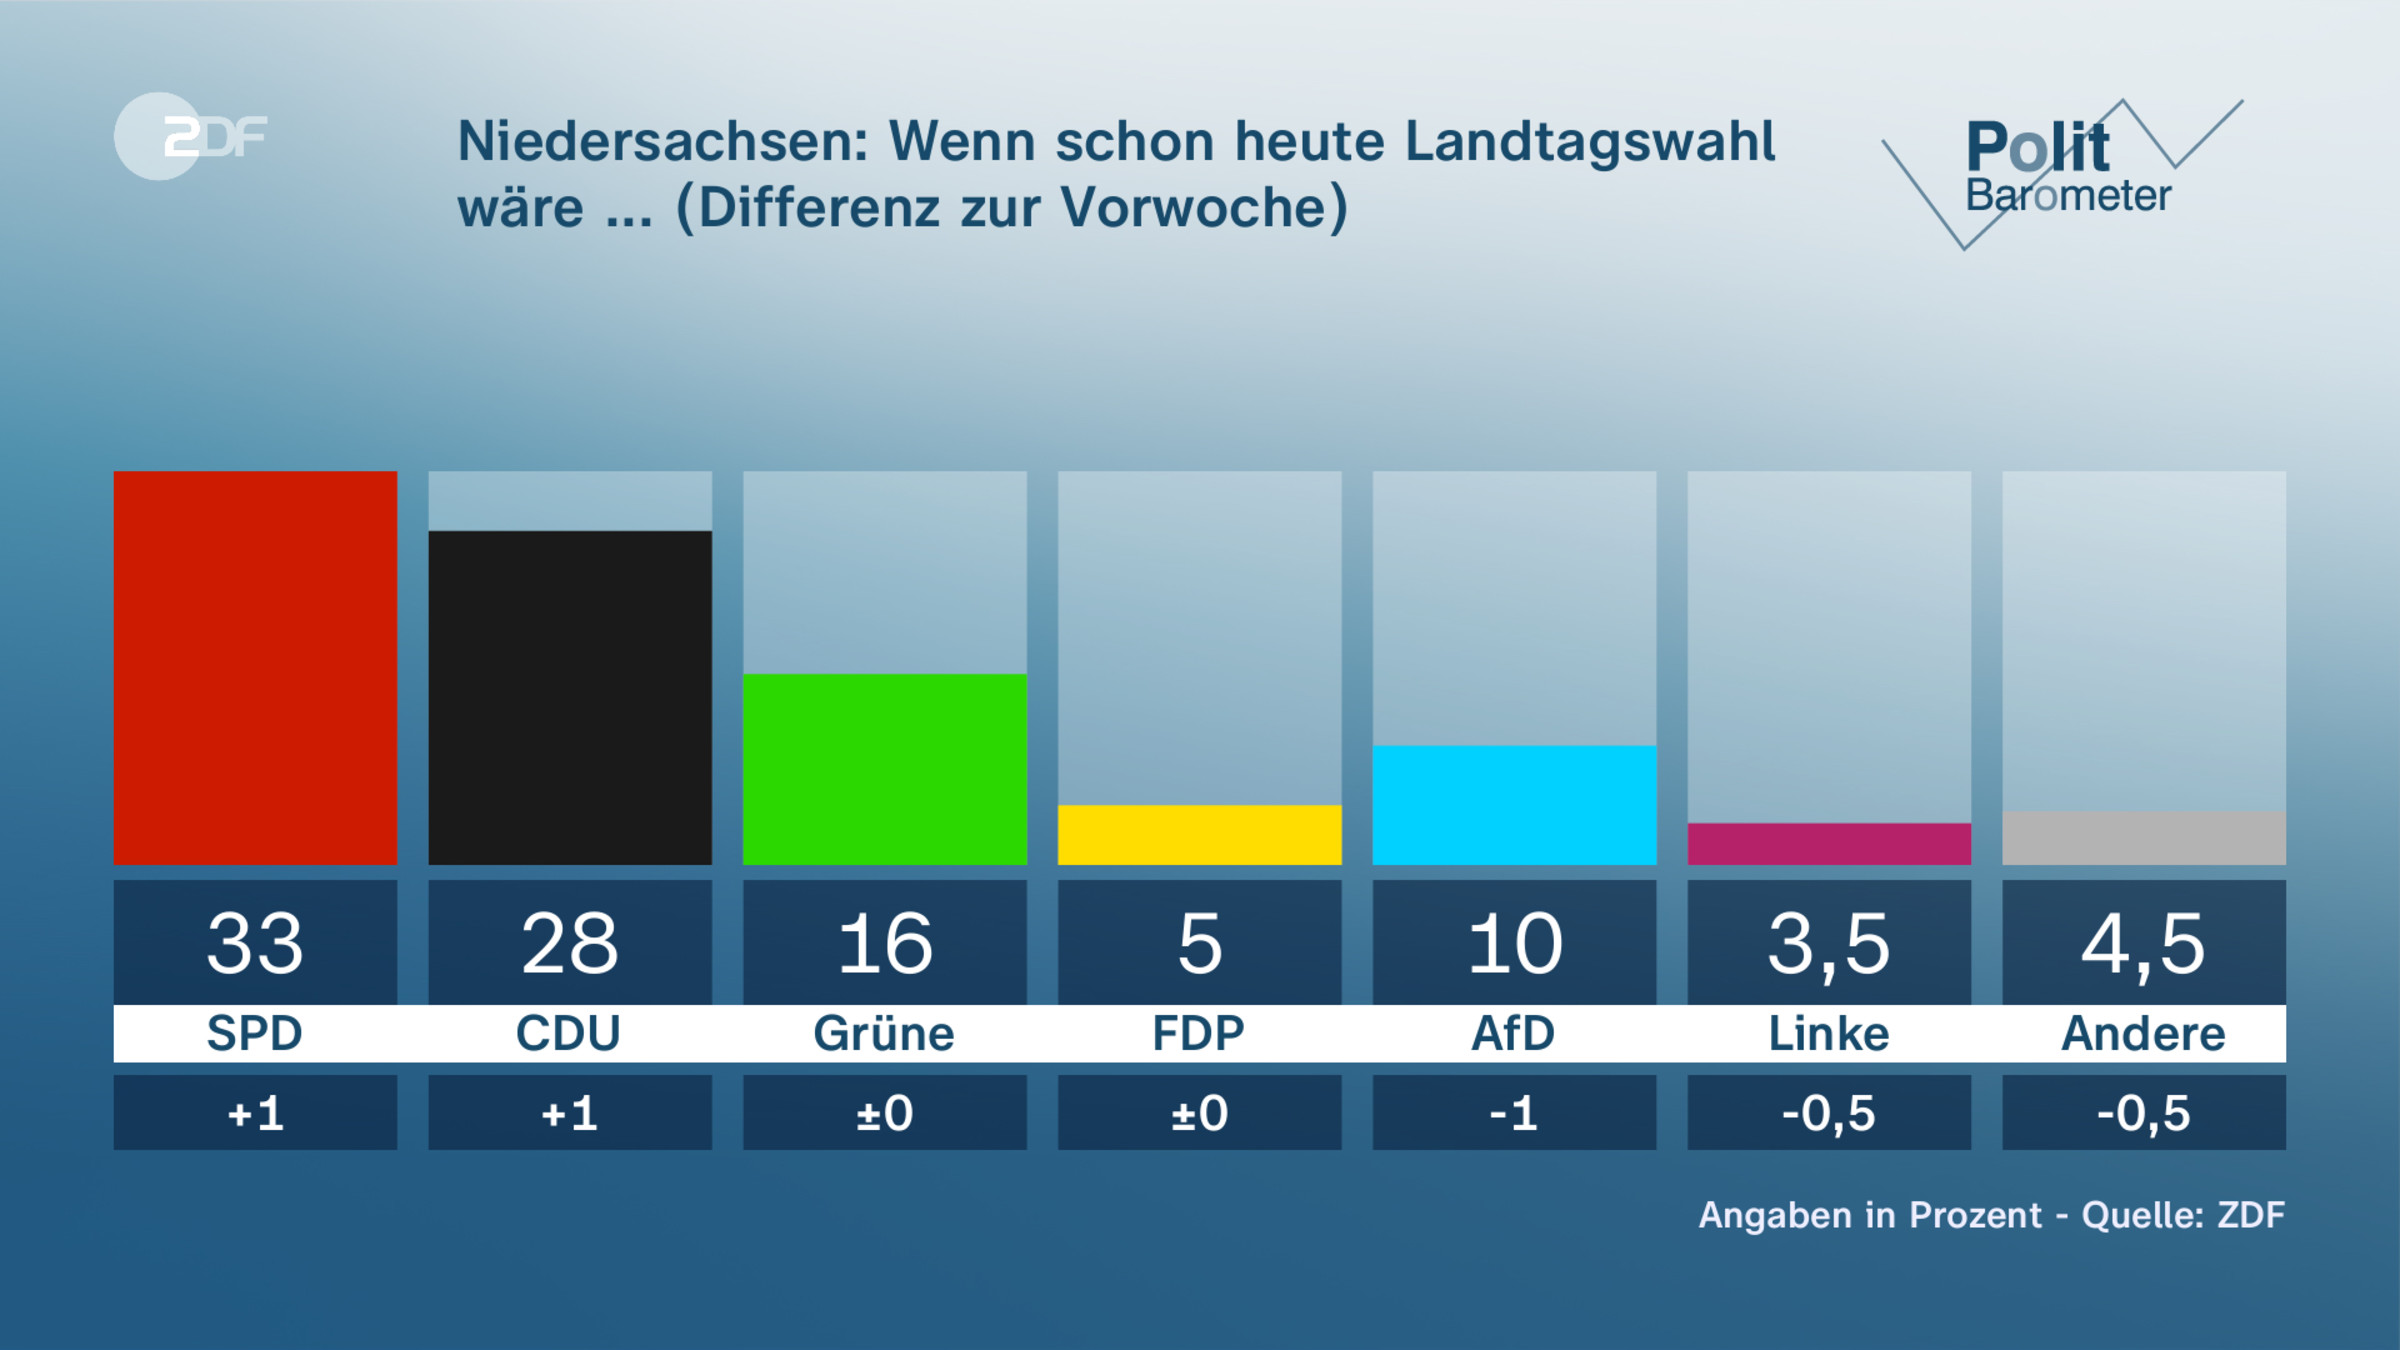 Niedersachsen: Wenn schon heute Landtagswahl wäre ... (Differenz zur Vorwoche)